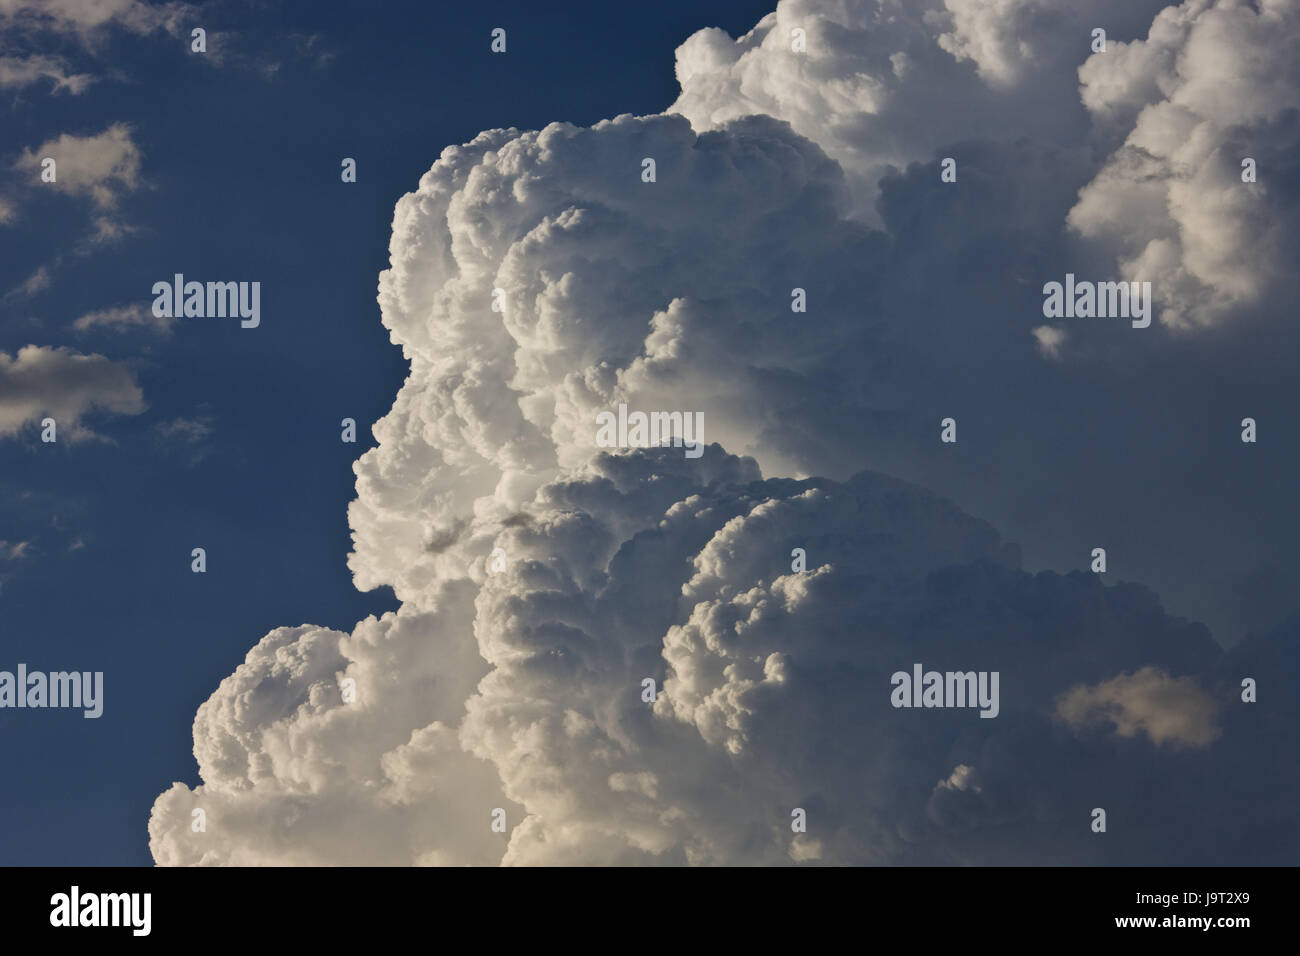 Himmel, Cumulus-Wolken, bewölkten Himmel, Wolken, Wetter, Cumulus-Wolken, Wolken Heap, Cumulus, blau, weiß, Cumuluswolken, Cloudied, Trübung, Meteorologie, Meteorologie, Klimazone, Wettervorhersage, Luftfeuchtigkeit, Klima, Wandel, Wettervorhersage, Wetterwechsel, Stockfoto